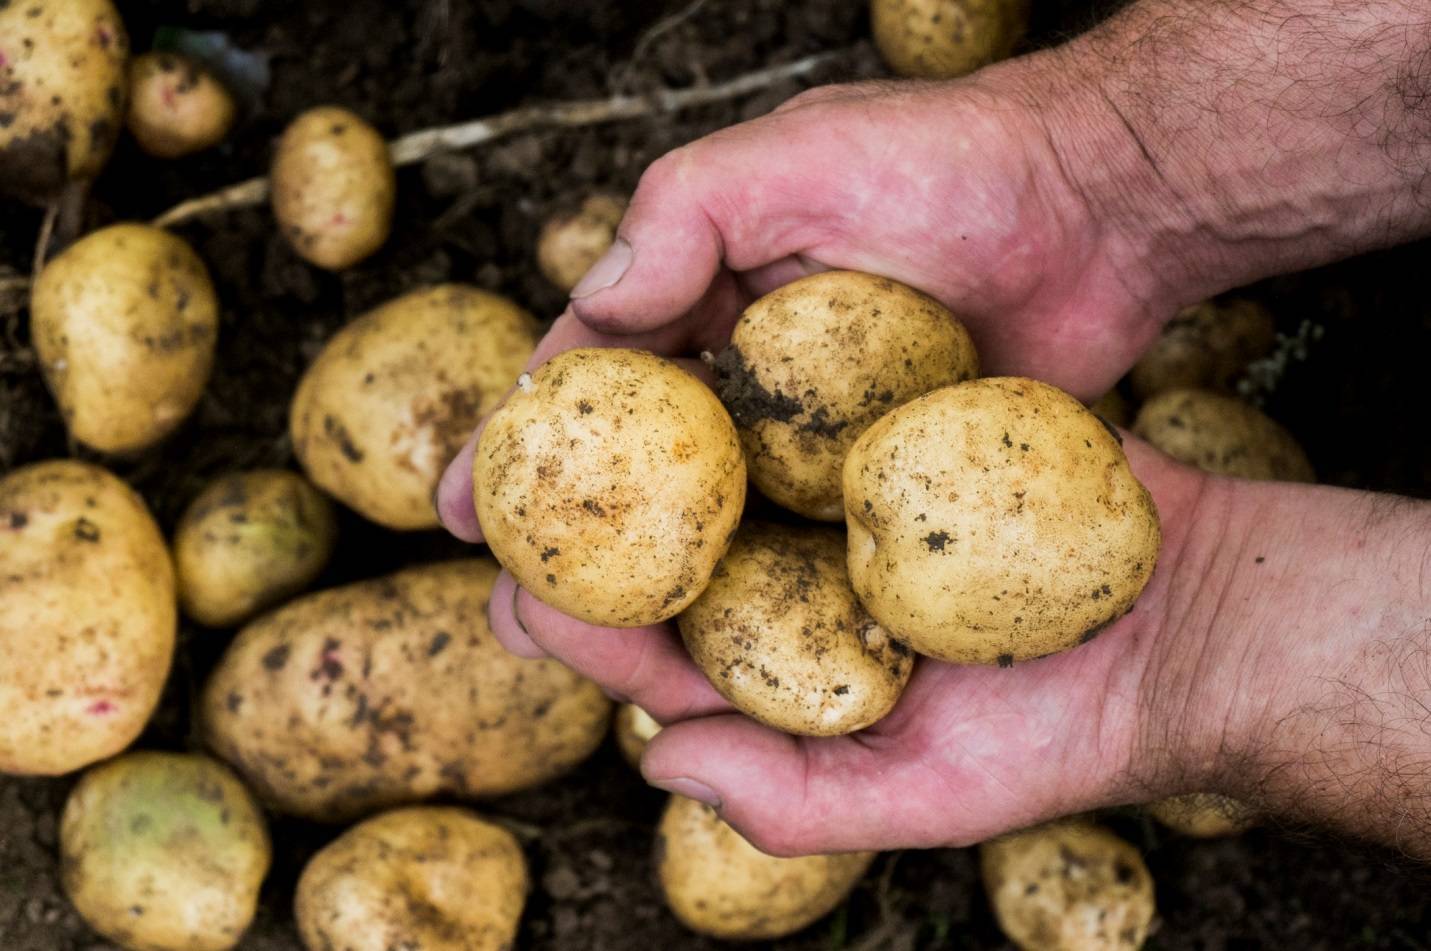 Подробное описание и характеристика сорта картофеля колетте